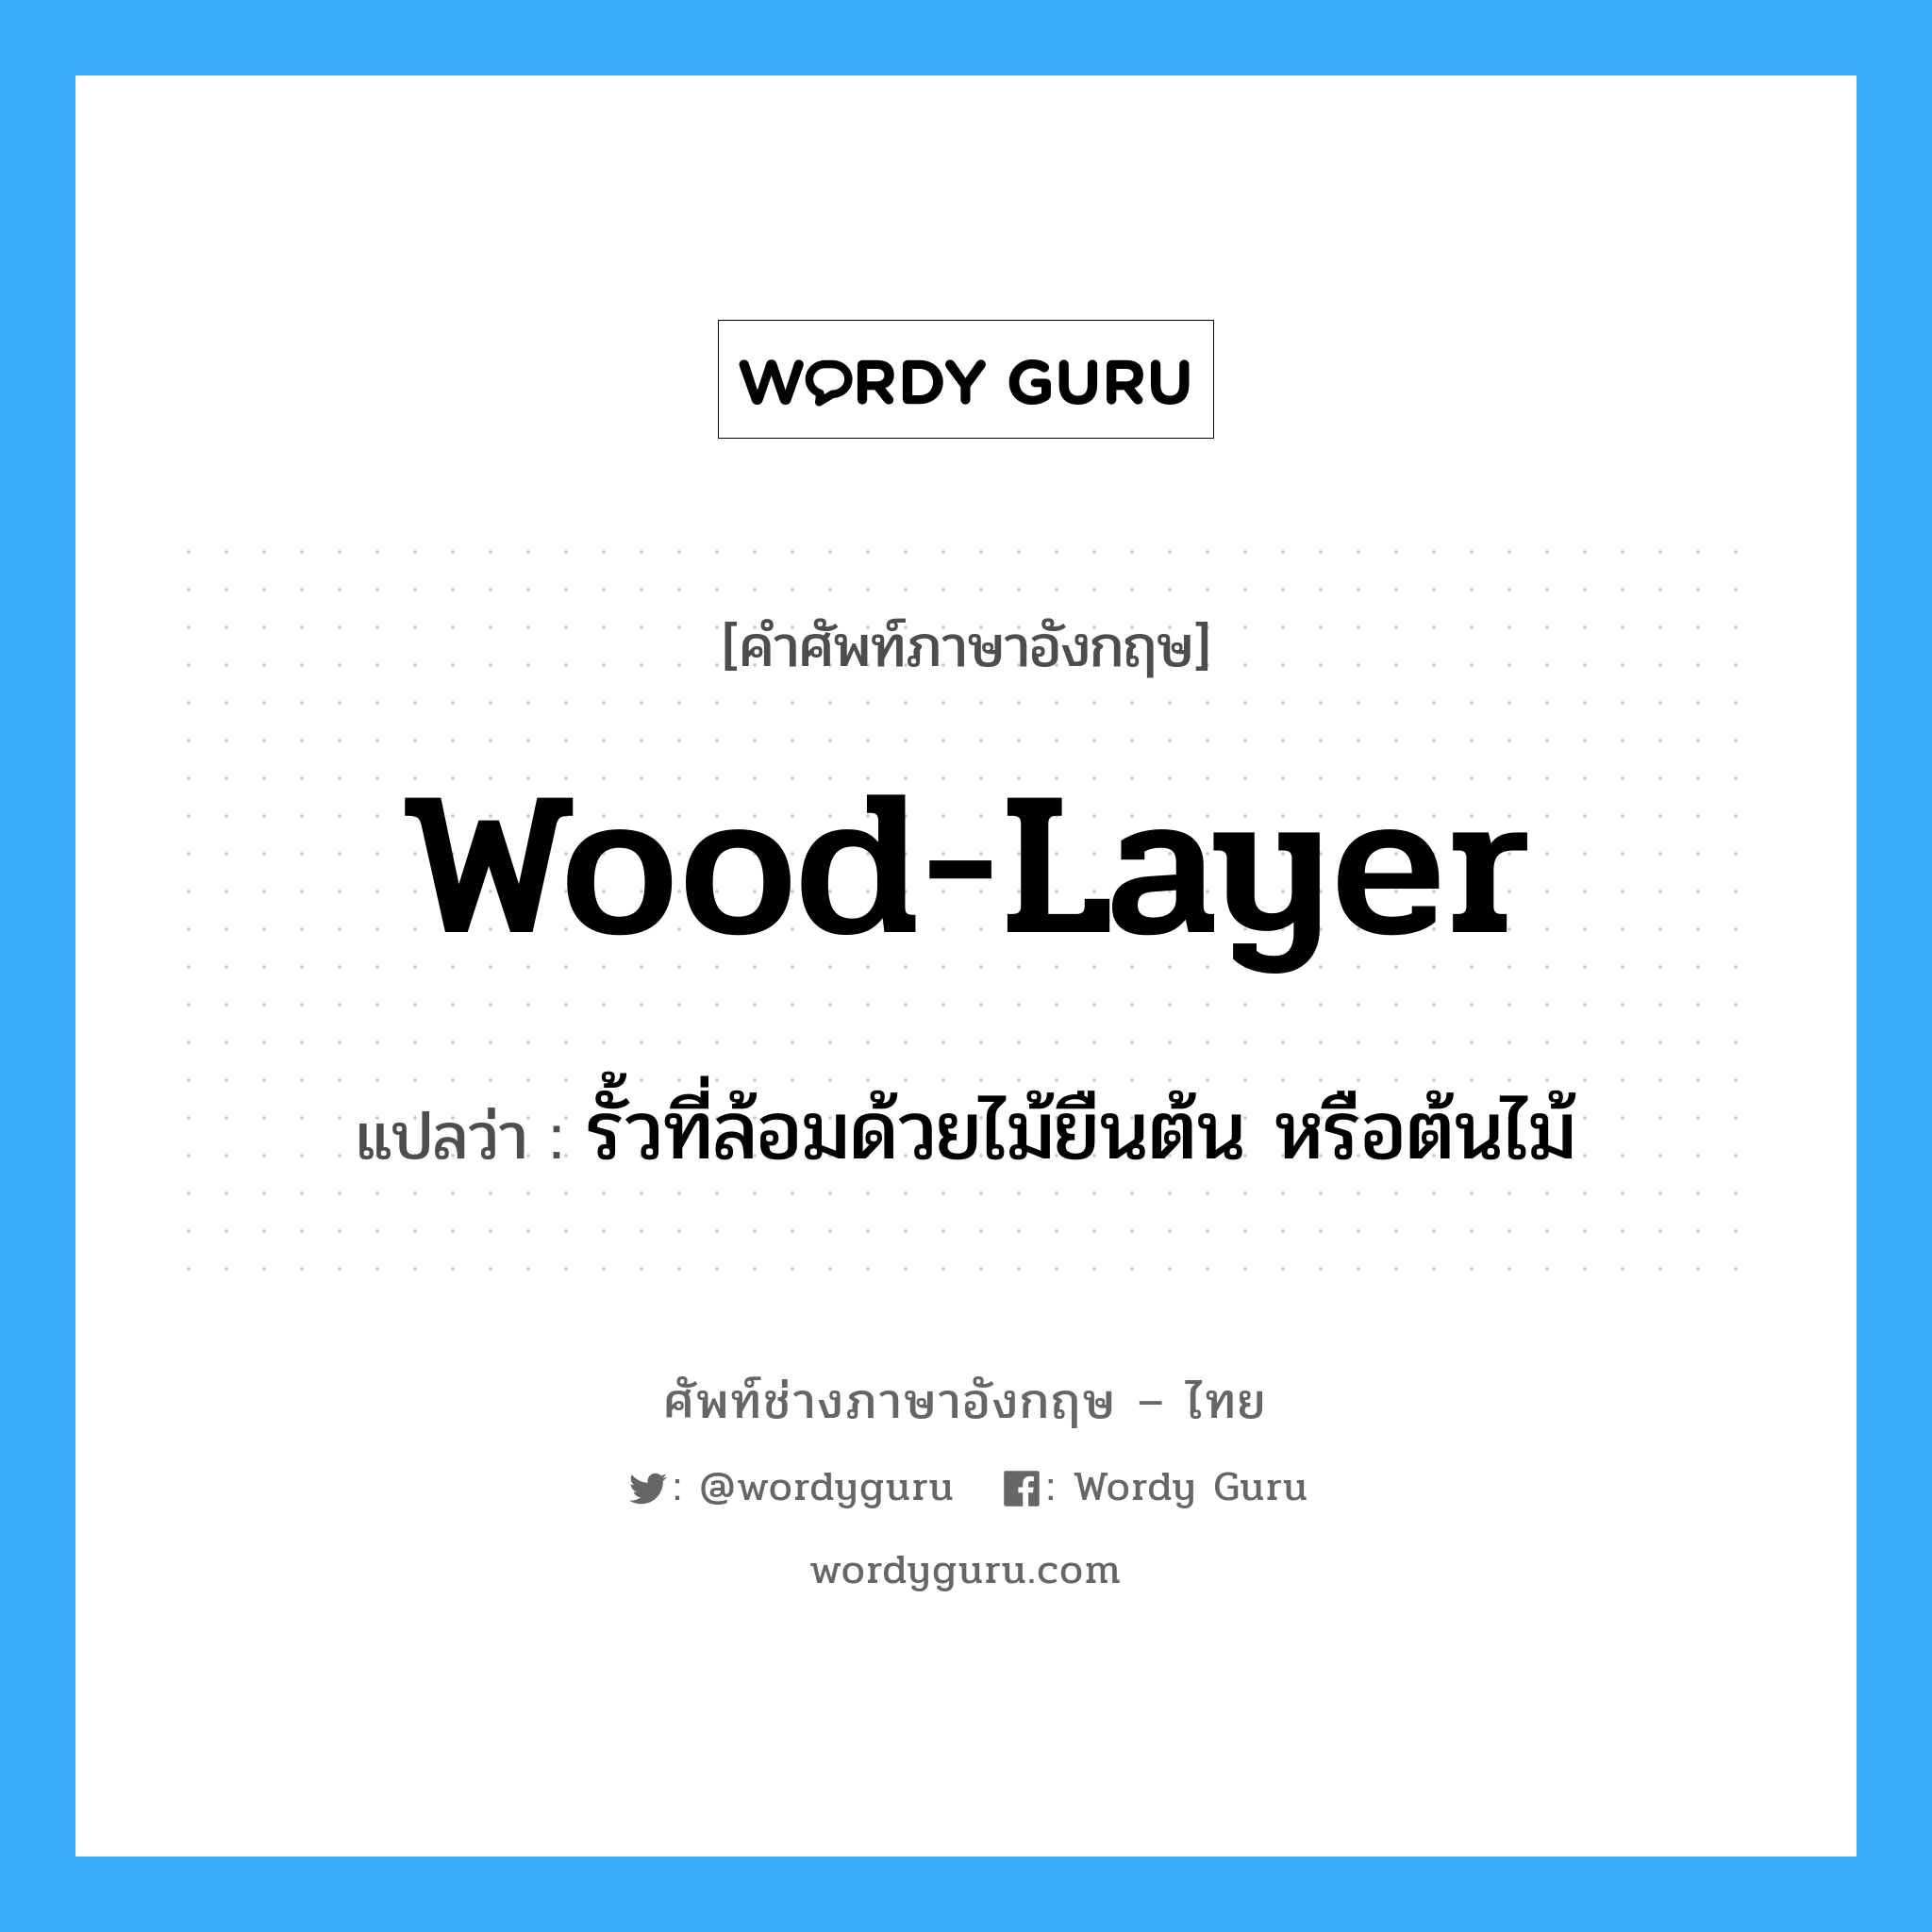 wood-layer แปลว่า?, คำศัพท์ช่างภาษาอังกฤษ - ไทย wood-layer คำศัพท์ภาษาอังกฤษ wood-layer แปลว่า รั้วที่ล้อมด้วยไม้ยืนต้น หรือต้นไม้